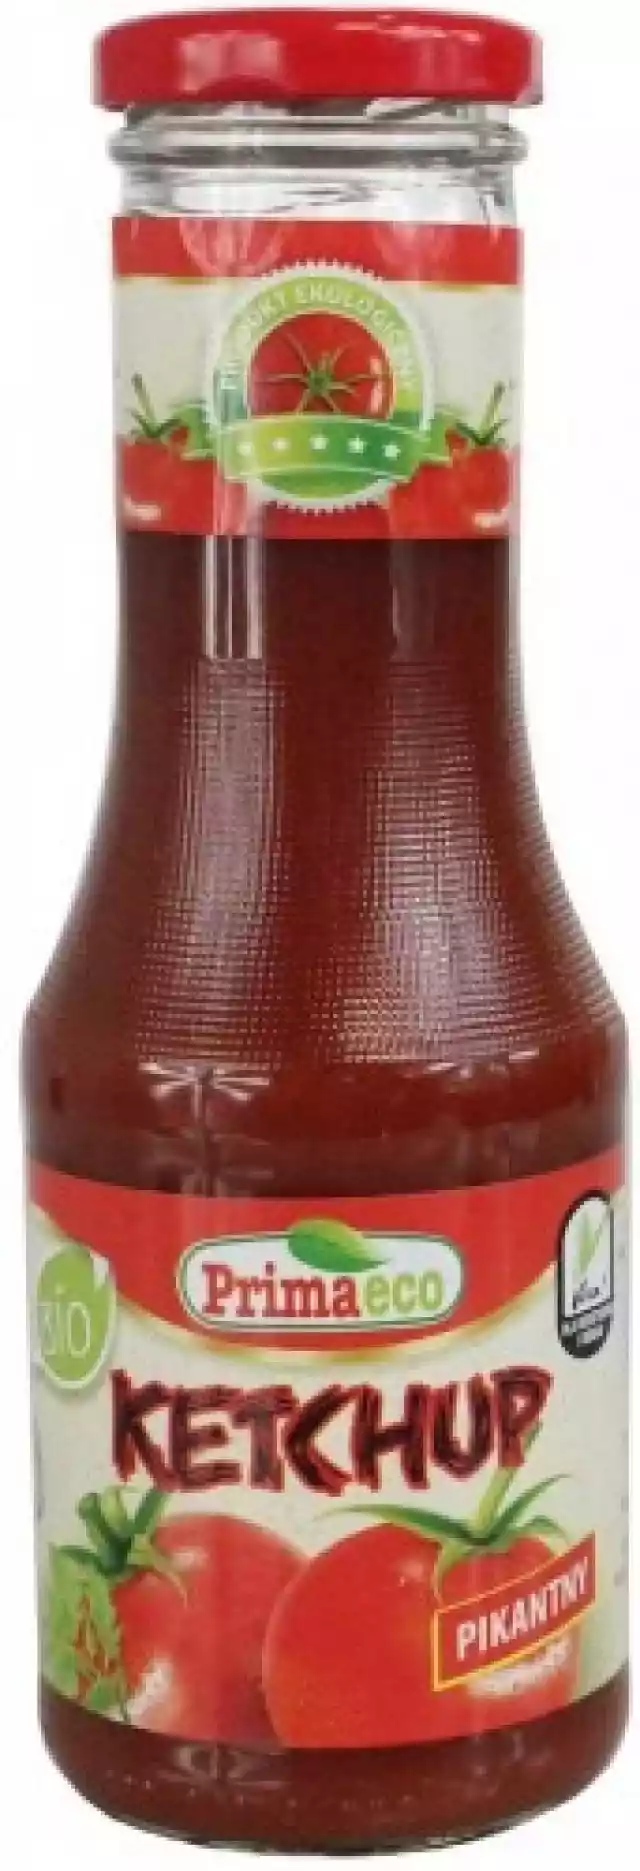 Ketchup Pikantny Bio 315 G - Primaeco